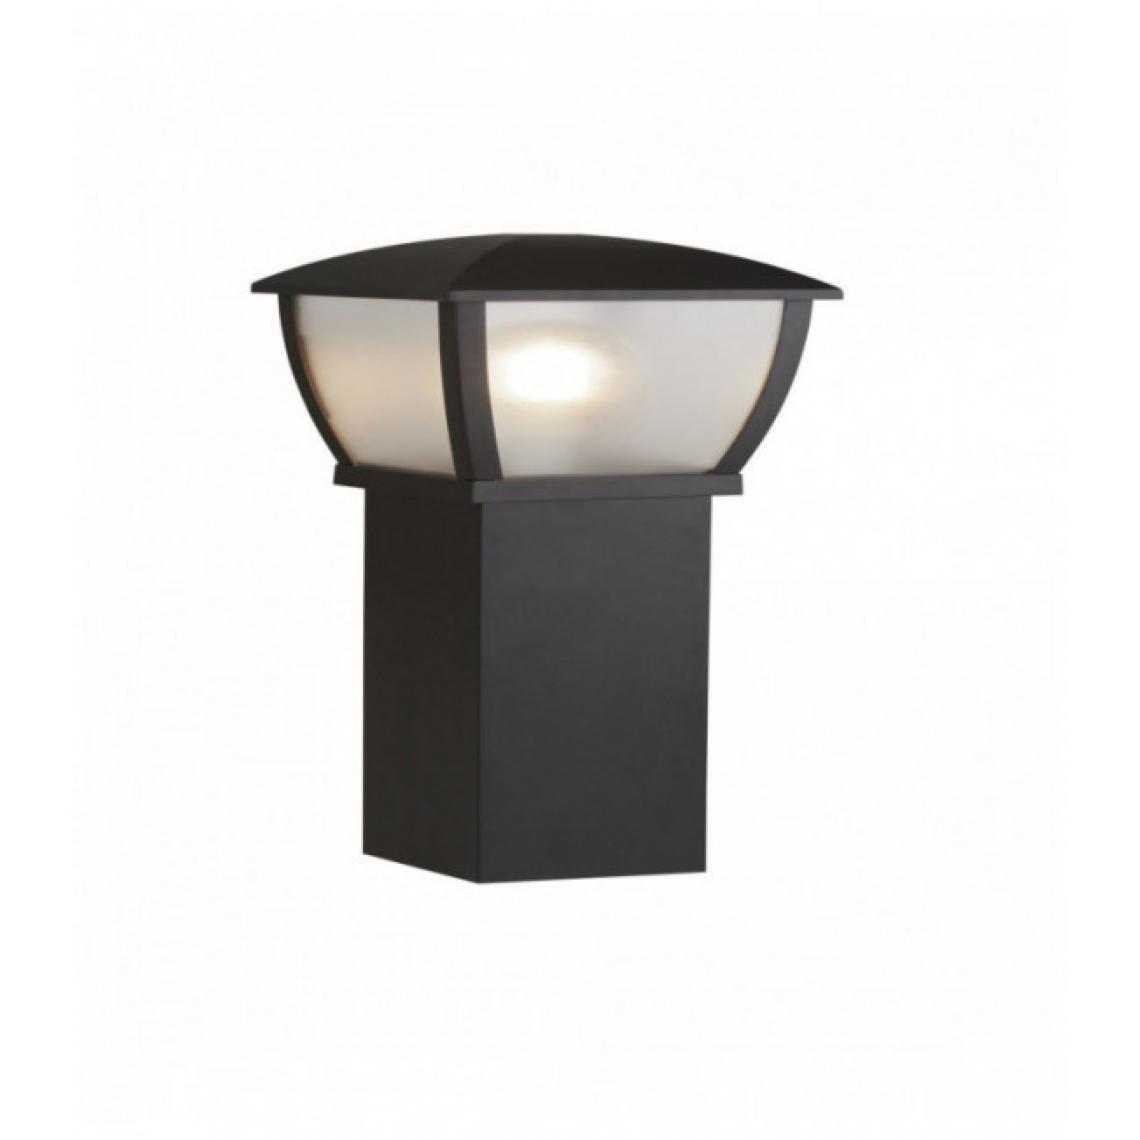 Searchlight - Poteau extérieur seattle hauteur 730 mm - noir avec panneaux givrés transparents - Borne, potelet